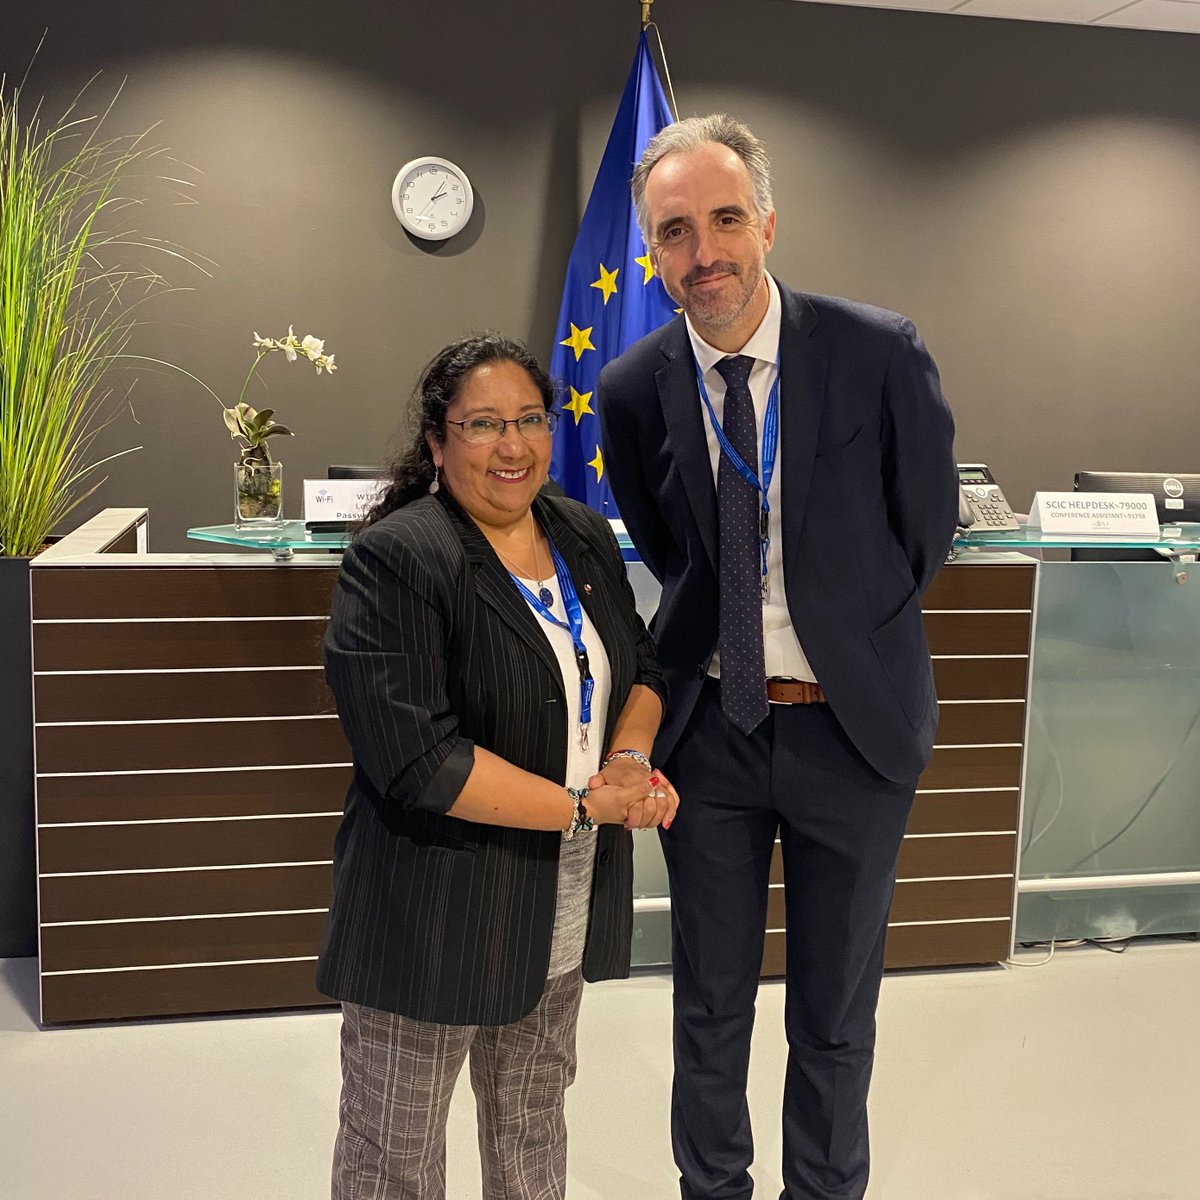 Feliz de haber conversado sobre I+D y genero con la ministra chilena @LuzVidalH en el evento EU-LAC. @ximenaguilera @ministeriosalud @aisen_ministra @min_ciencia @MinMujeryEG